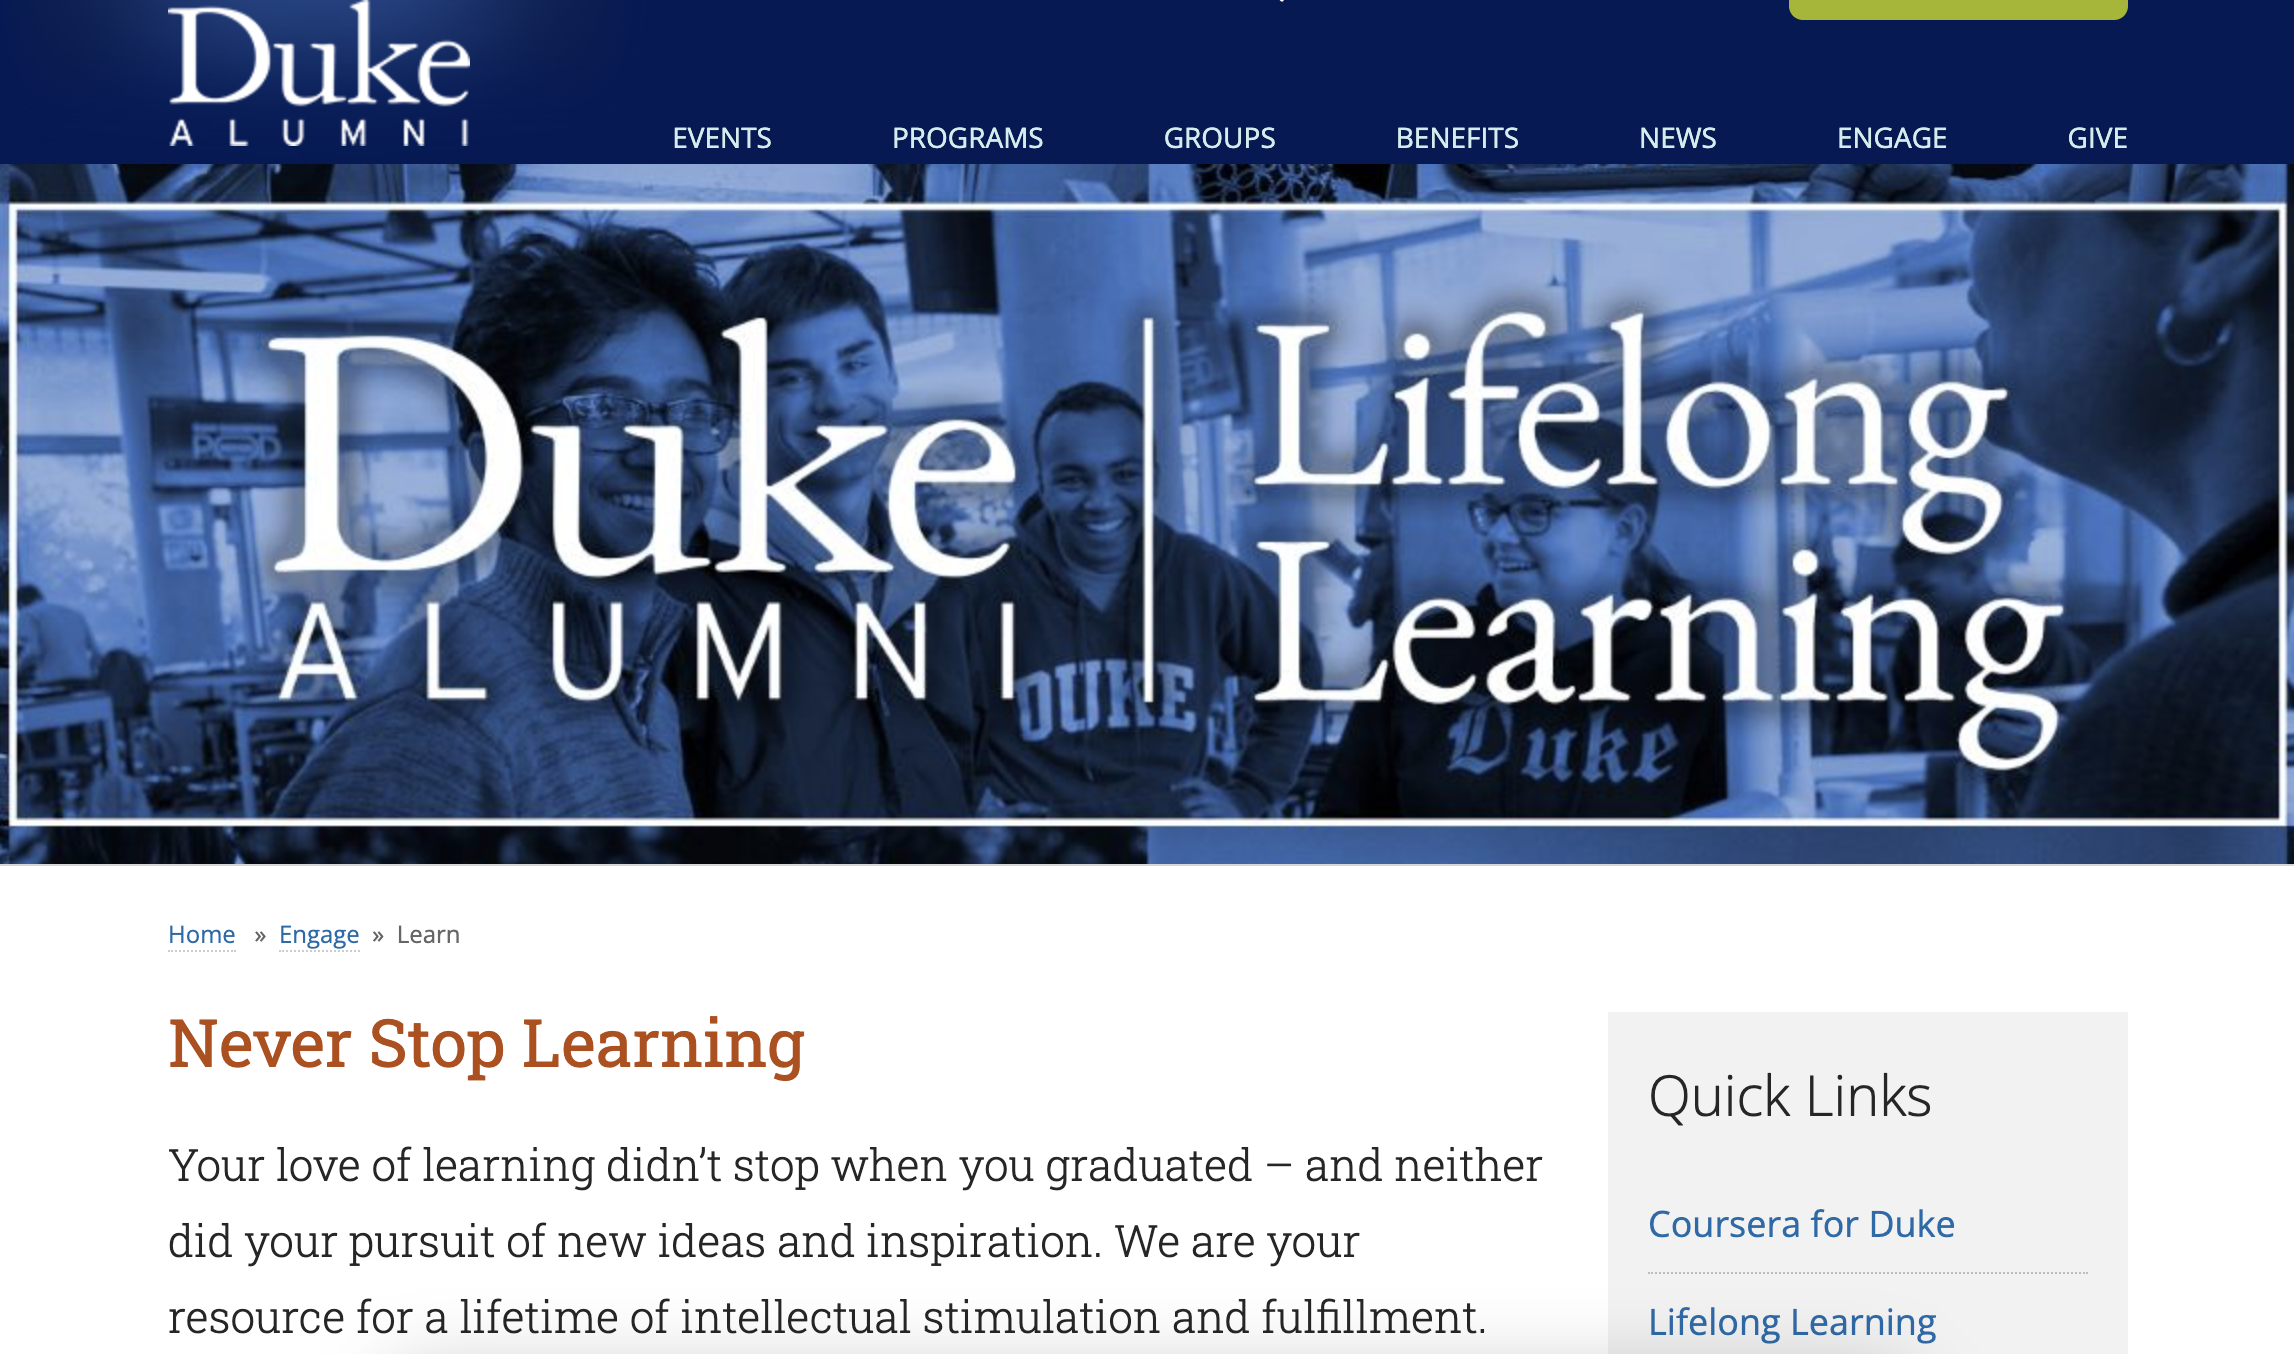 Blog post image 8 - 8 ways to engage alumni - Lifelong Learning - Duke 